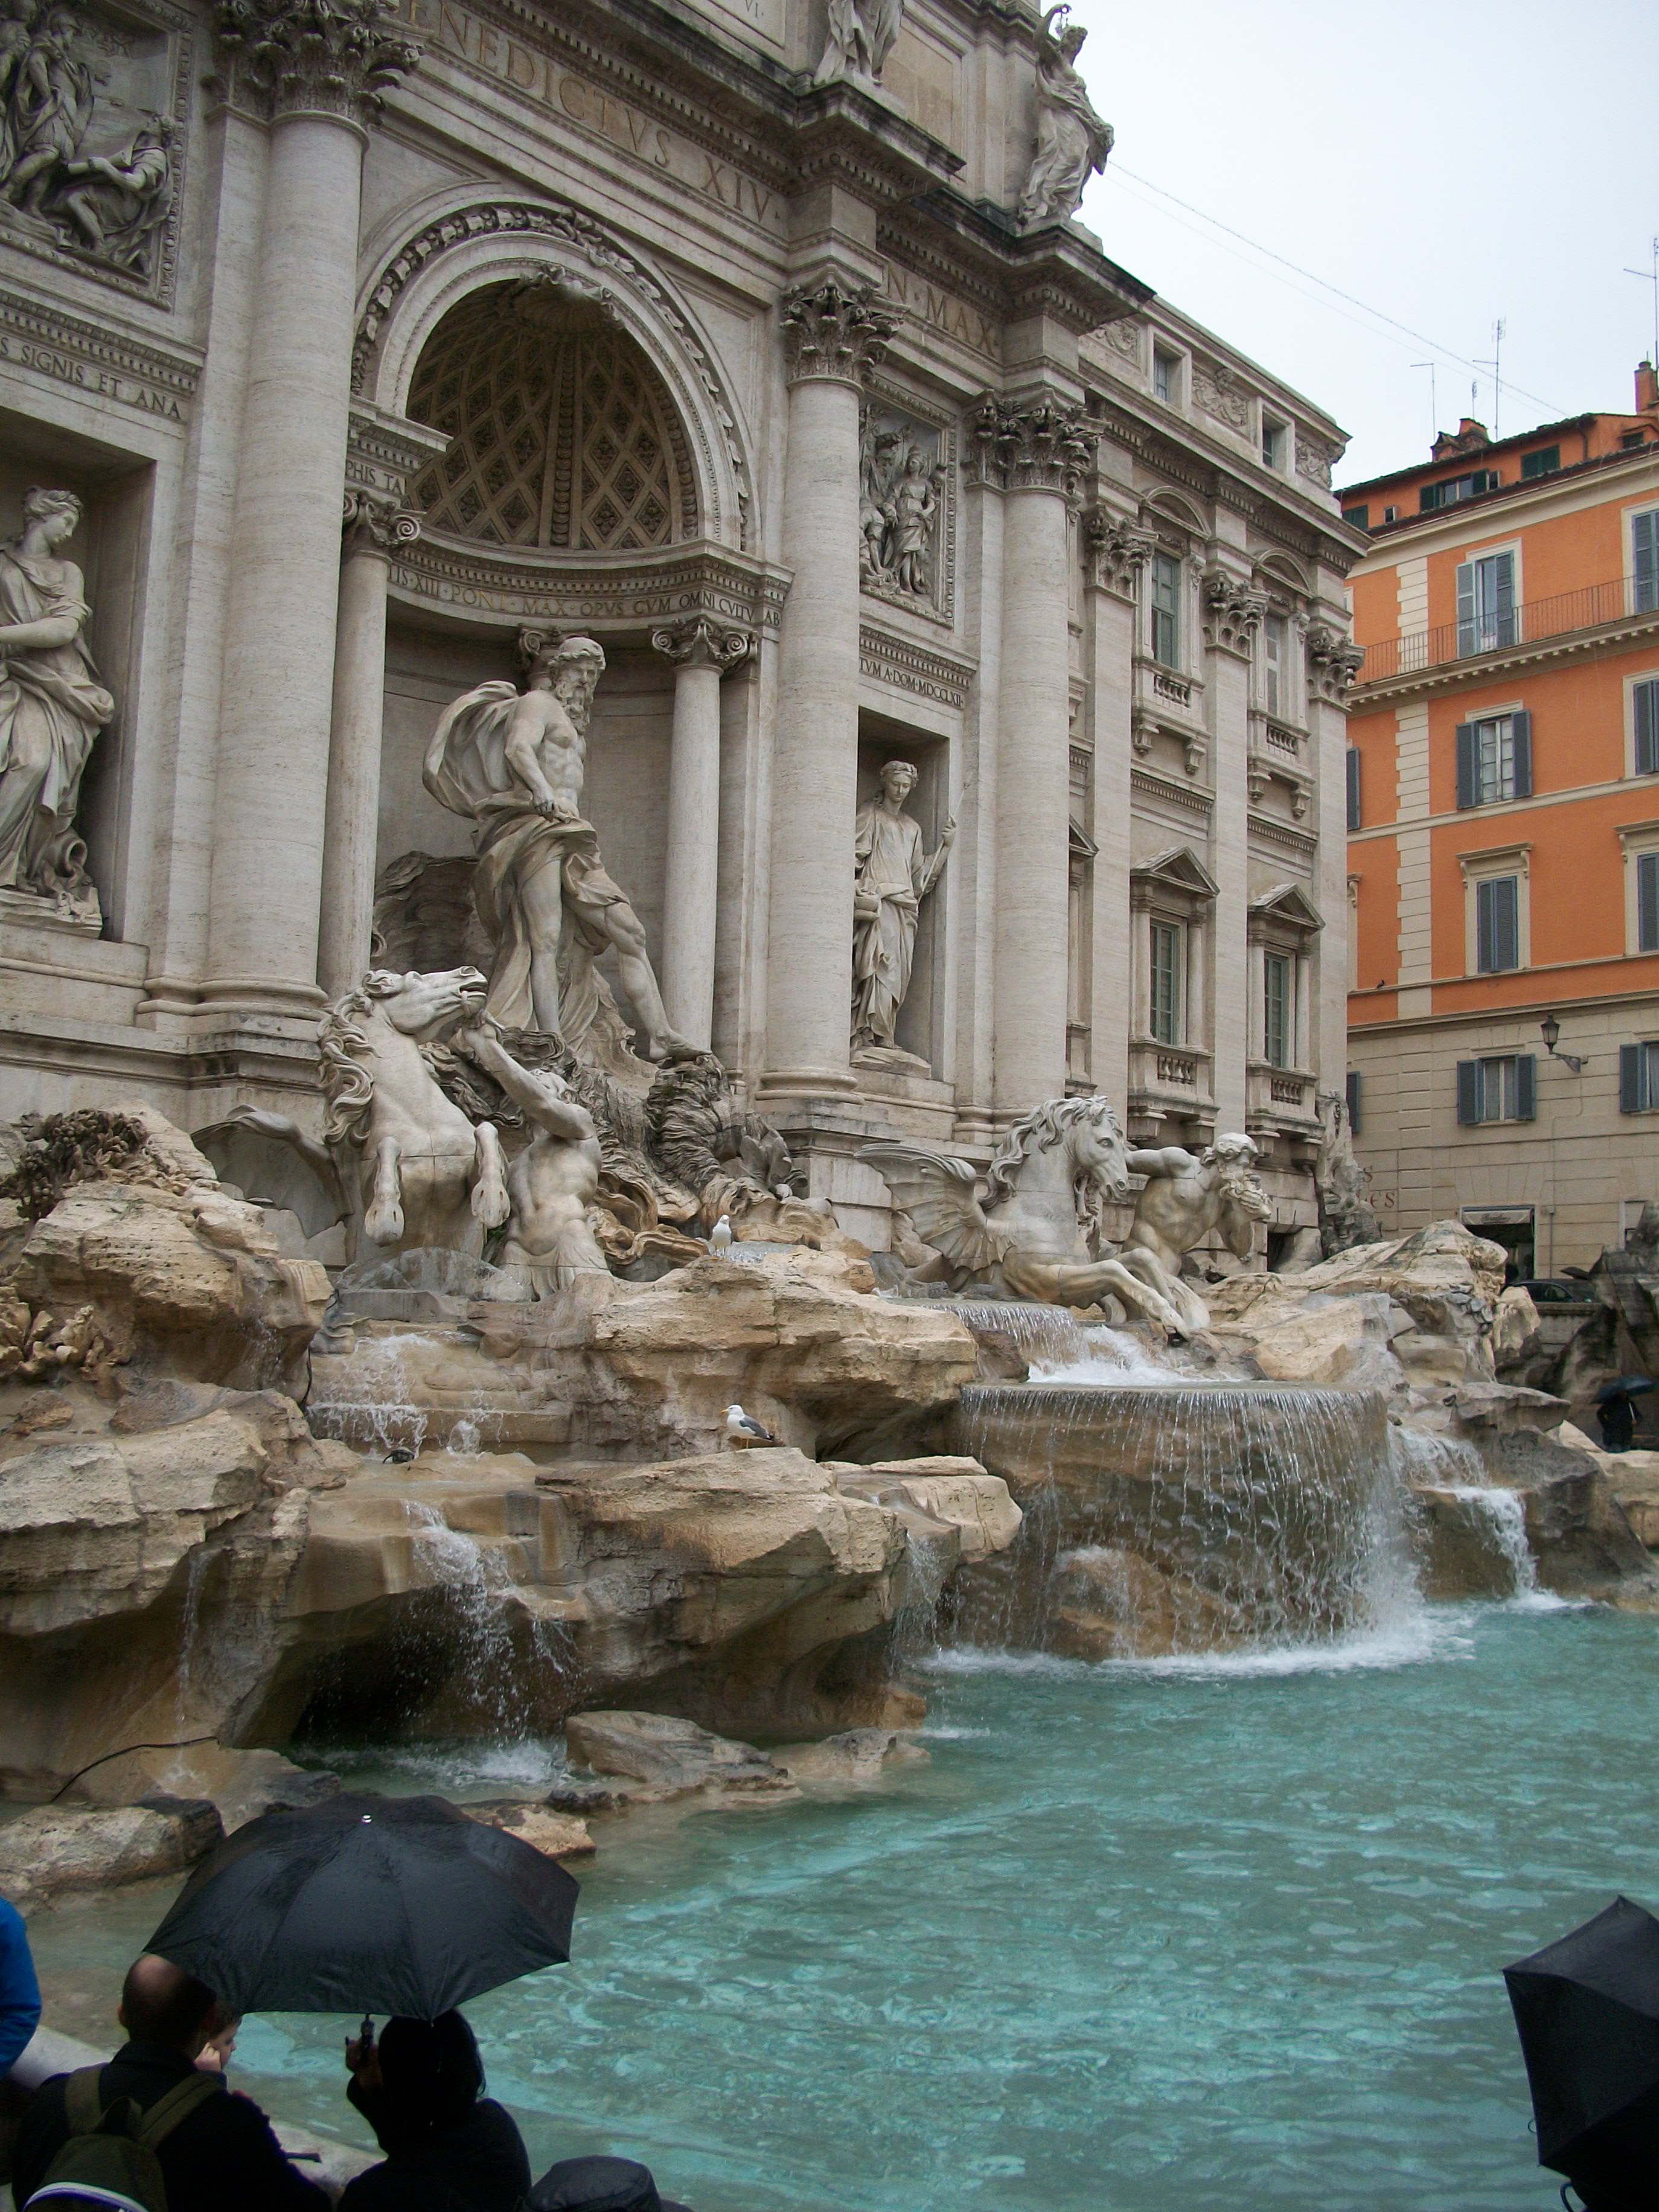 Tivoli/Rome: Day 2 | Italy Study Abroad